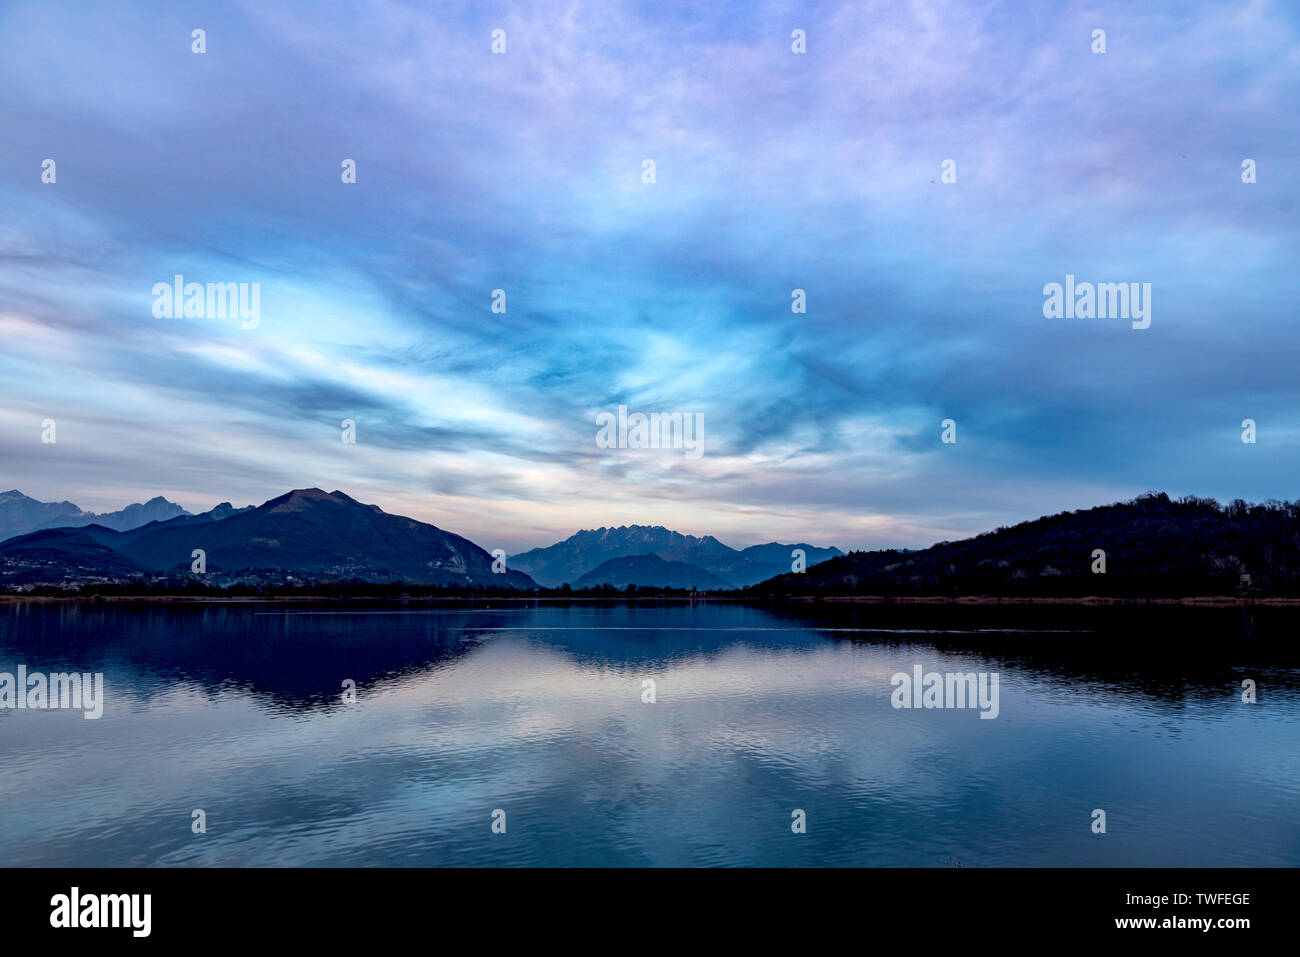 Alserio lake and mountains Stock Photo